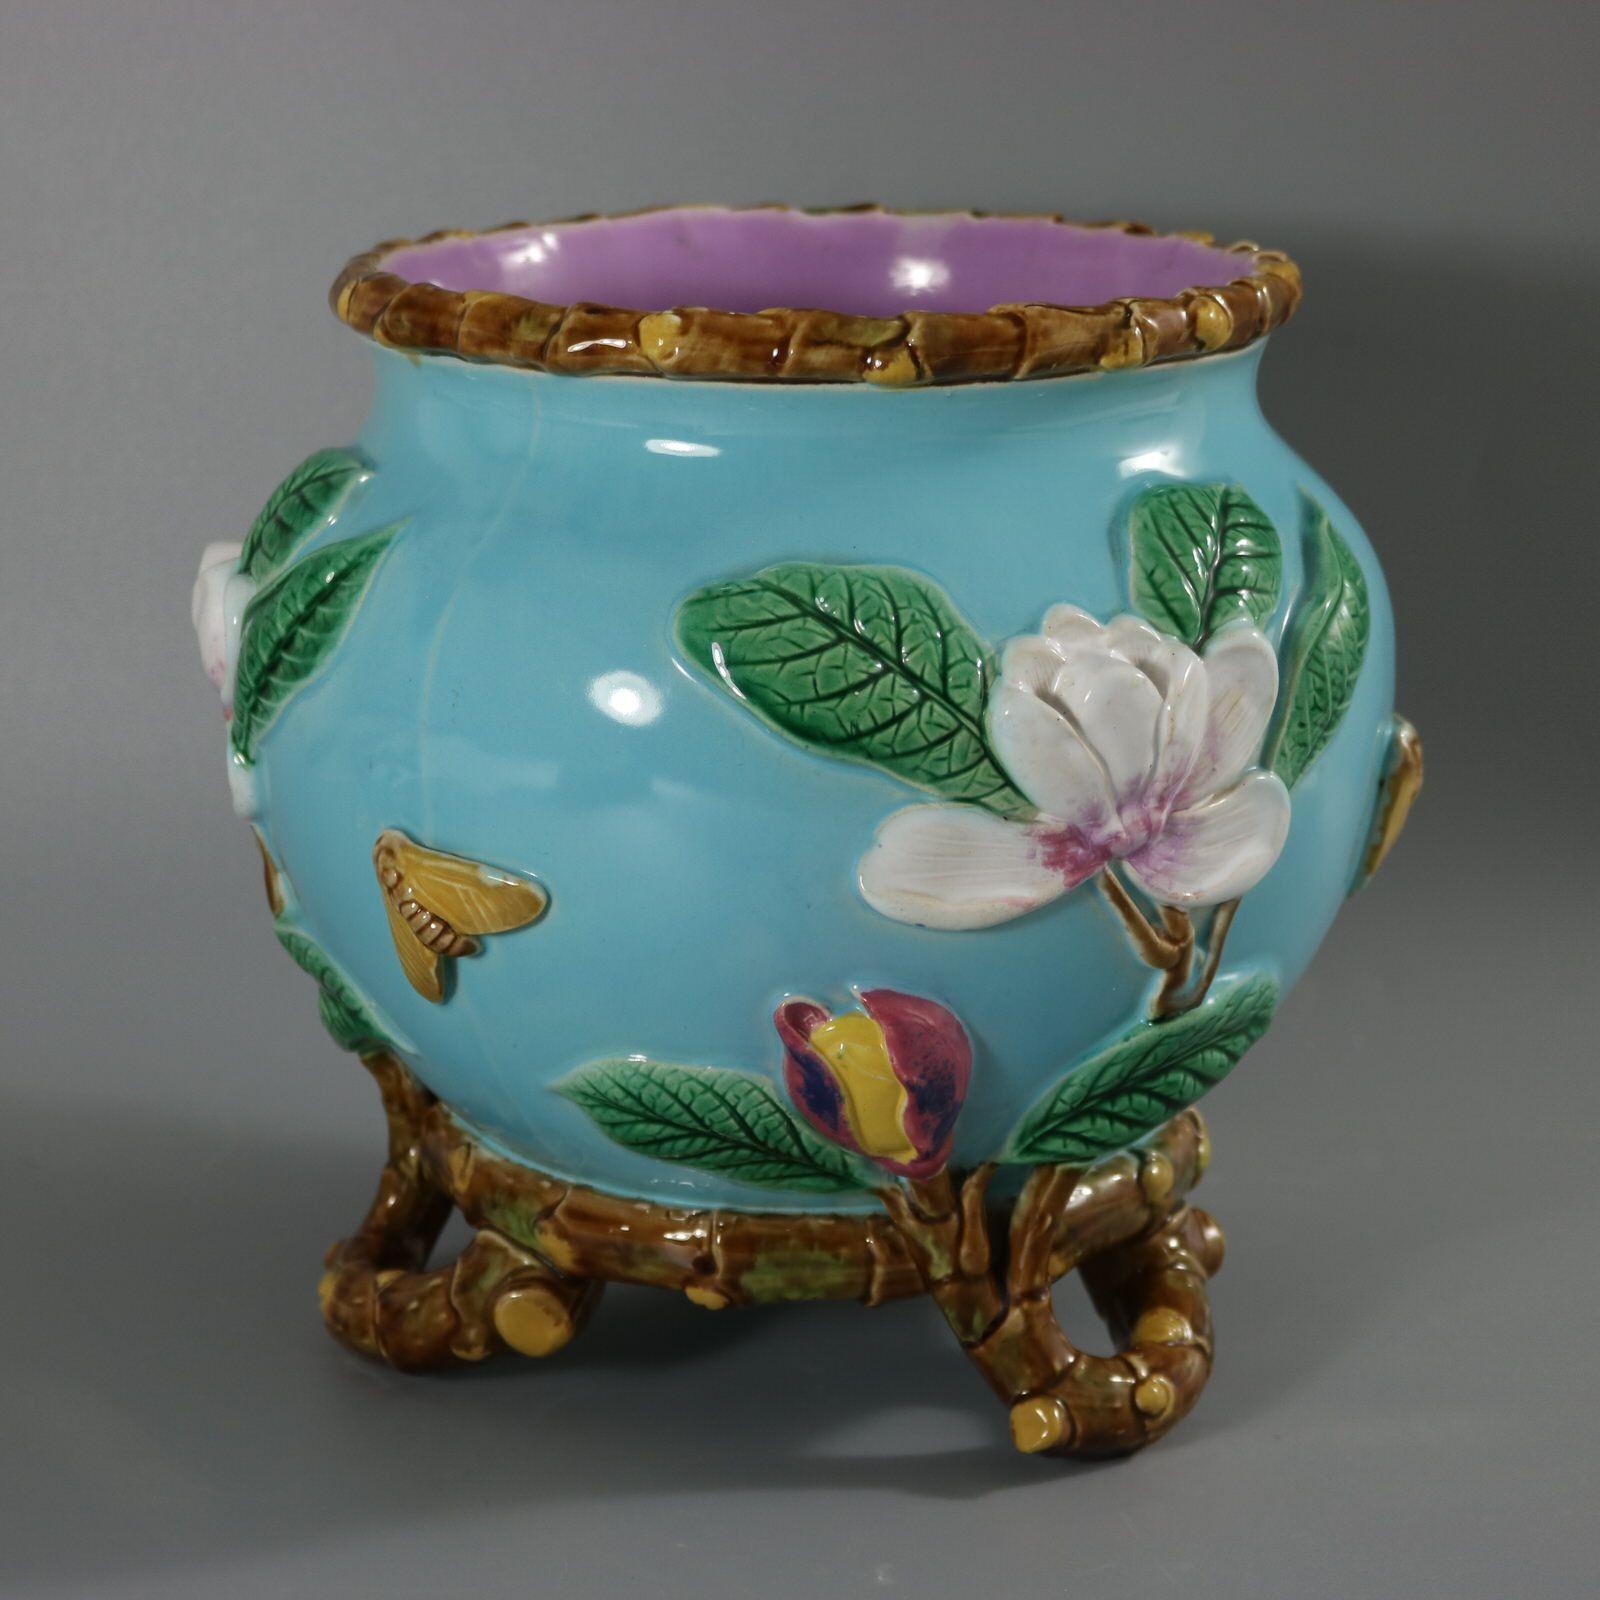 Cache-pot en majolique de George Jones représentant une fleur de magnolia et deux papillons de nuit. Version avec fond turquoise. Coloration : turquoise, vert, blanc, sont prédominants. Porte un numéro de modèle, 